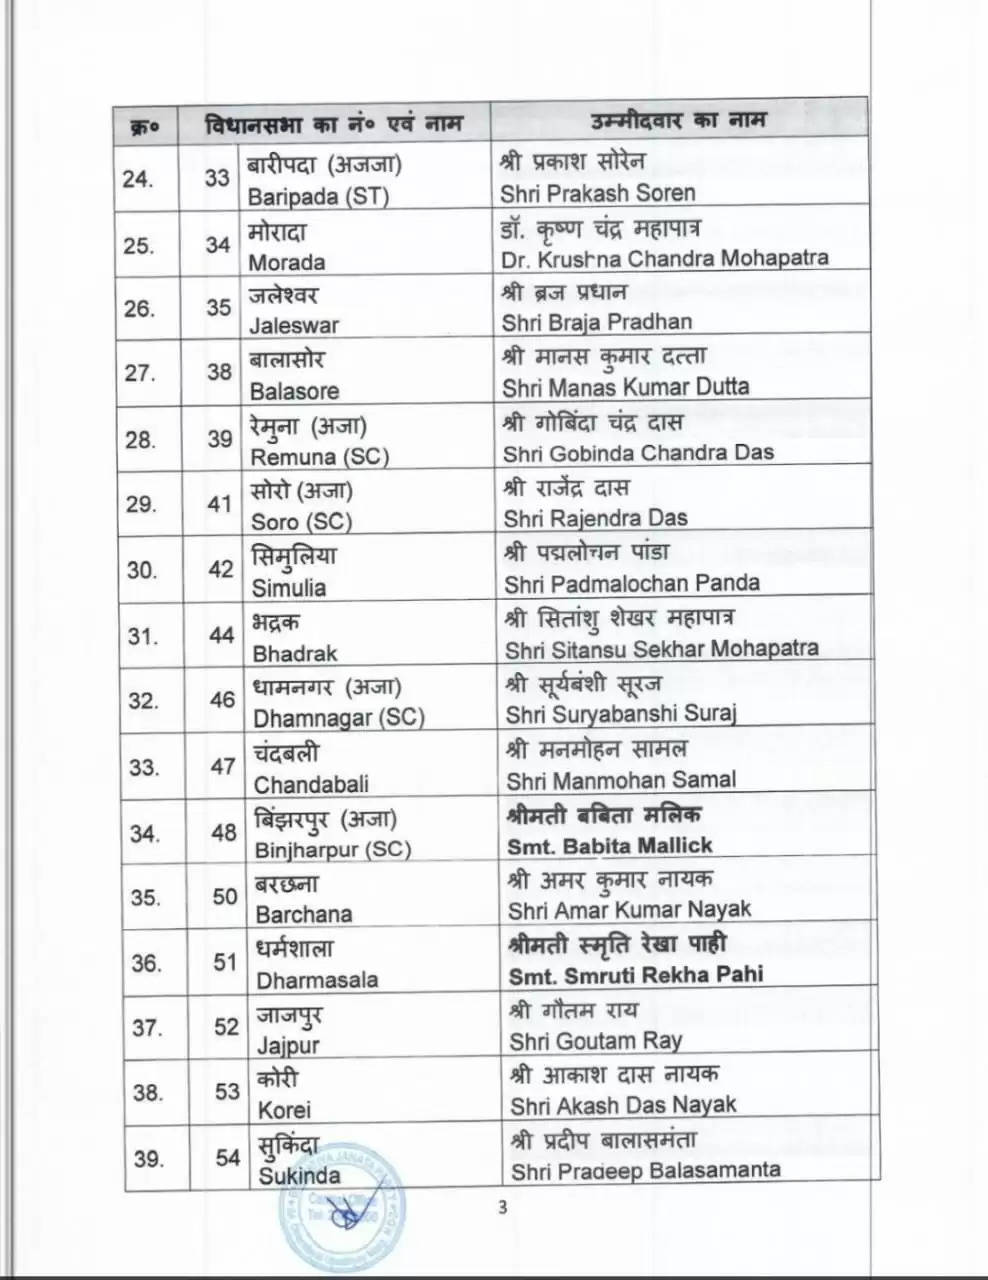 भाजपा ने ओडिशा विधानसभा चुनाव के लिए जारी की 112 उम्मीदवारों की पहली सूची